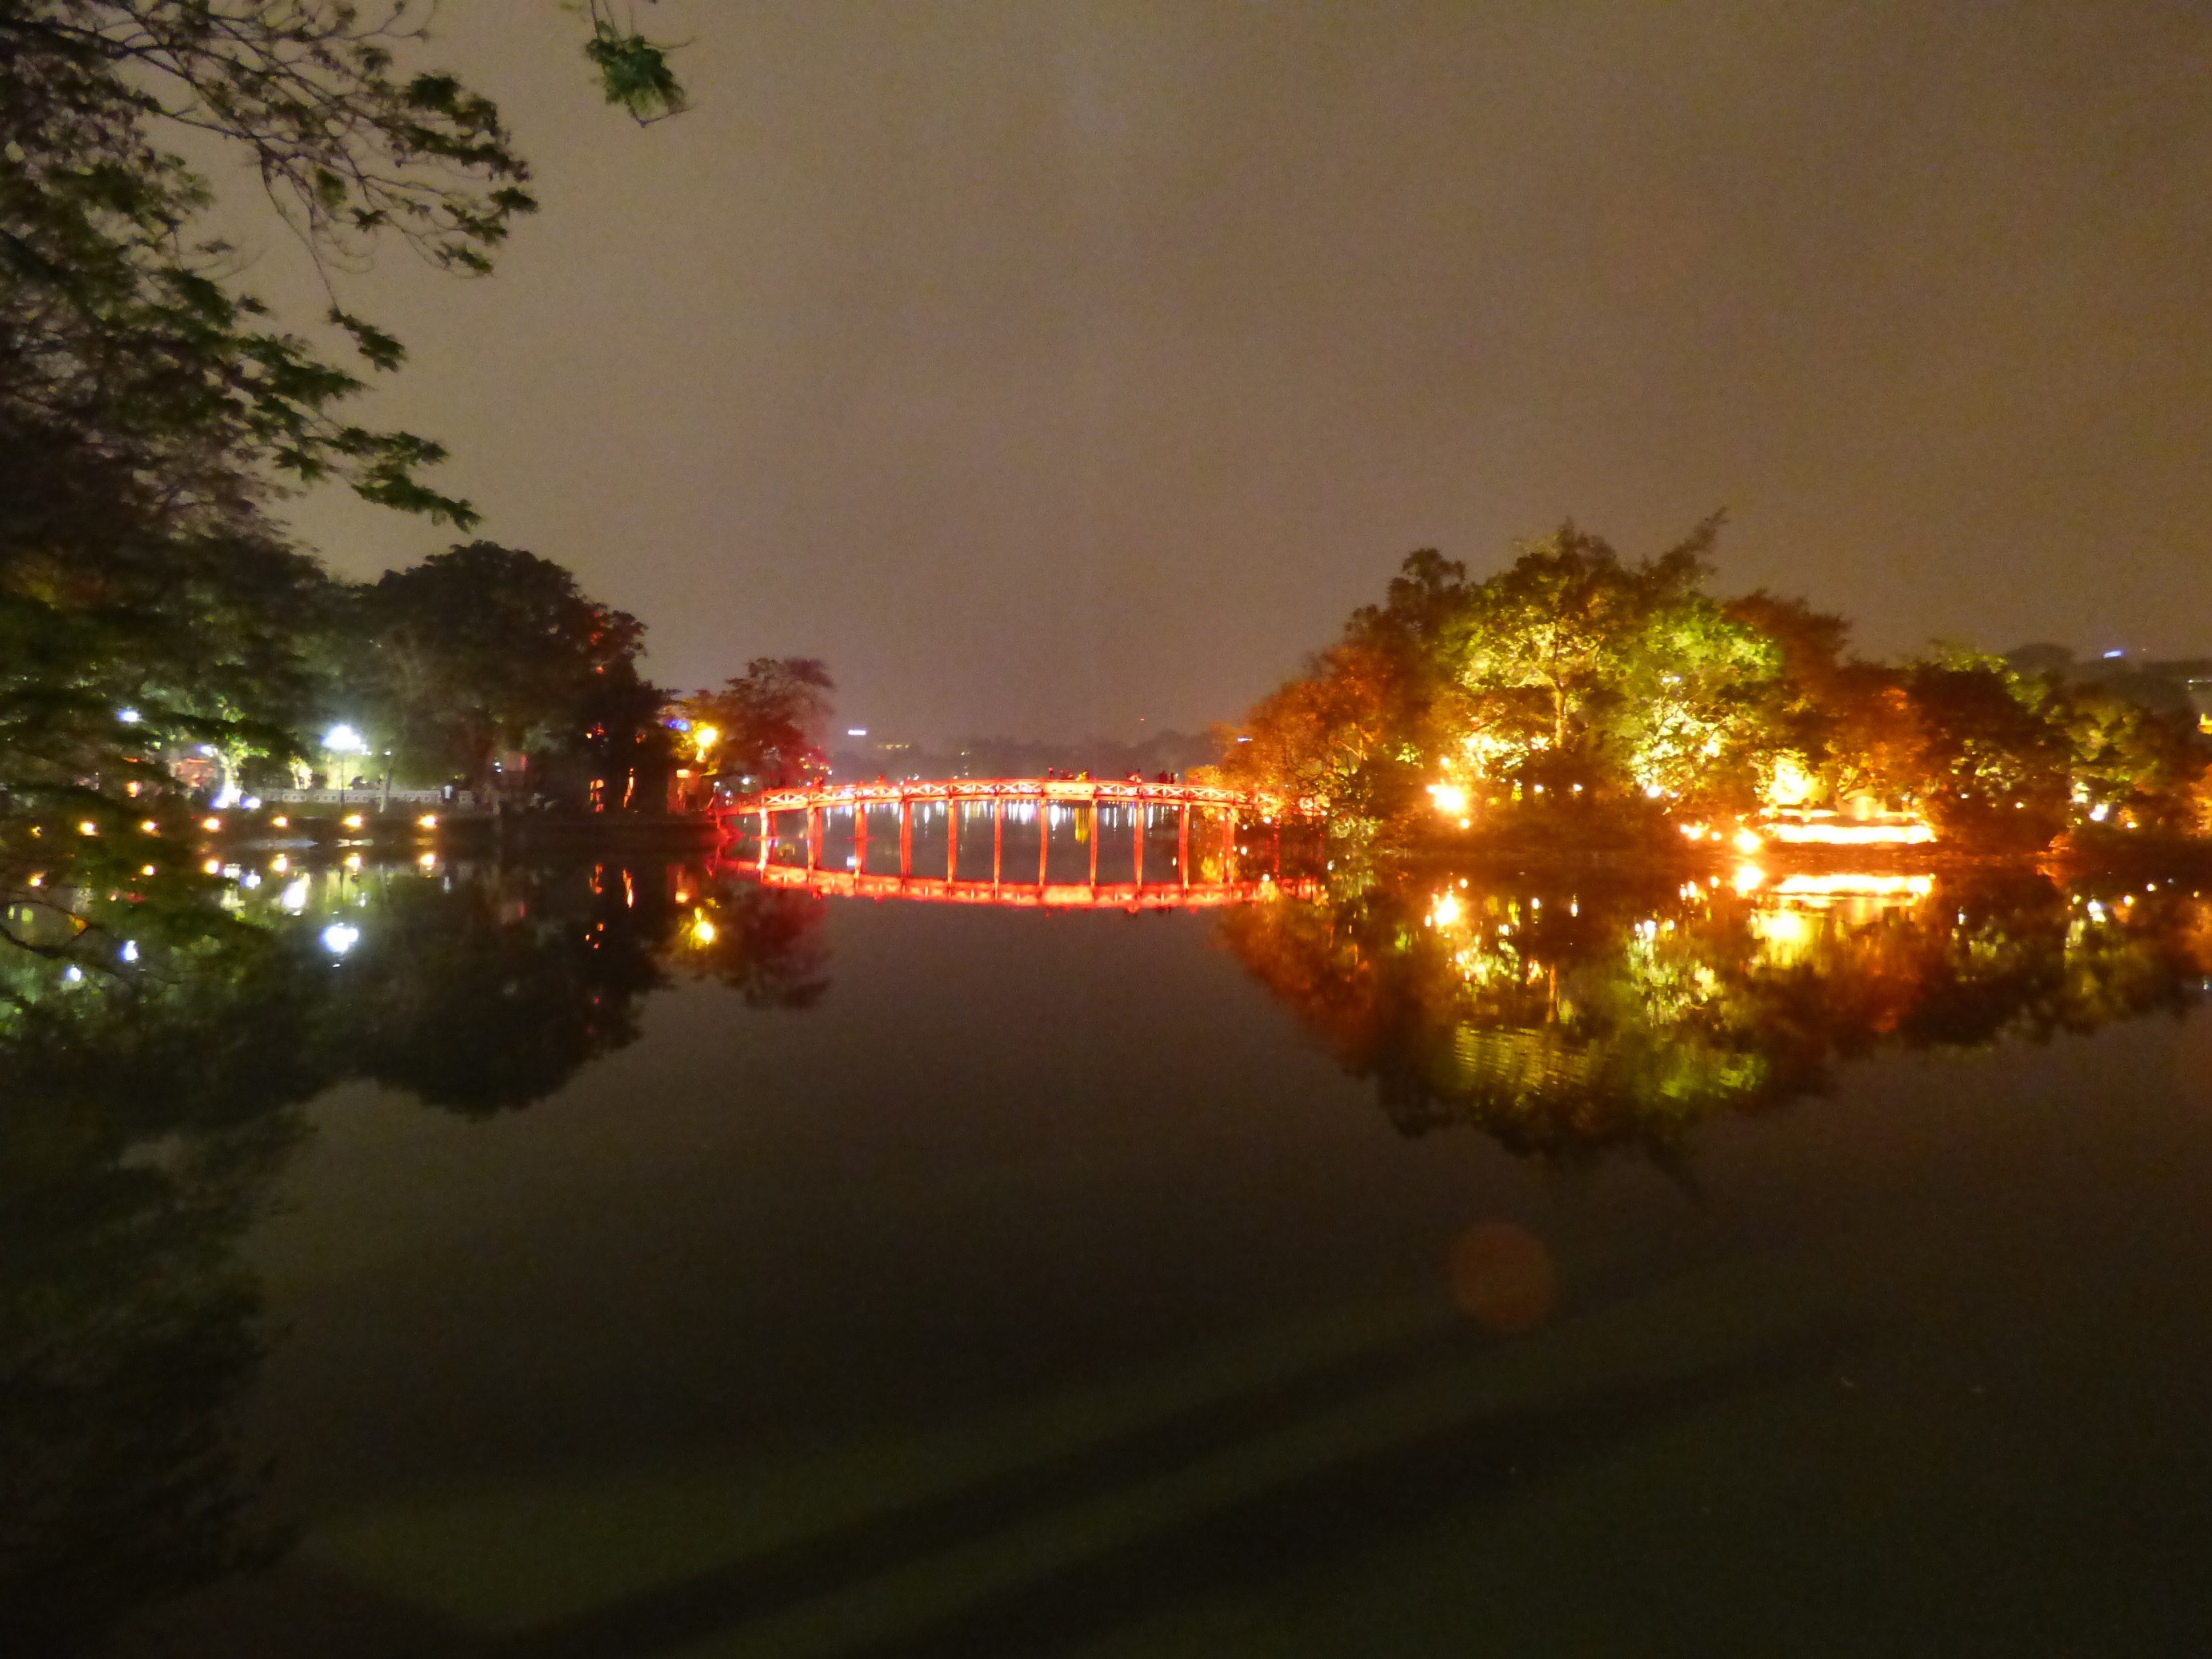 A vörös híd csodálatos az esti kivilágításban.